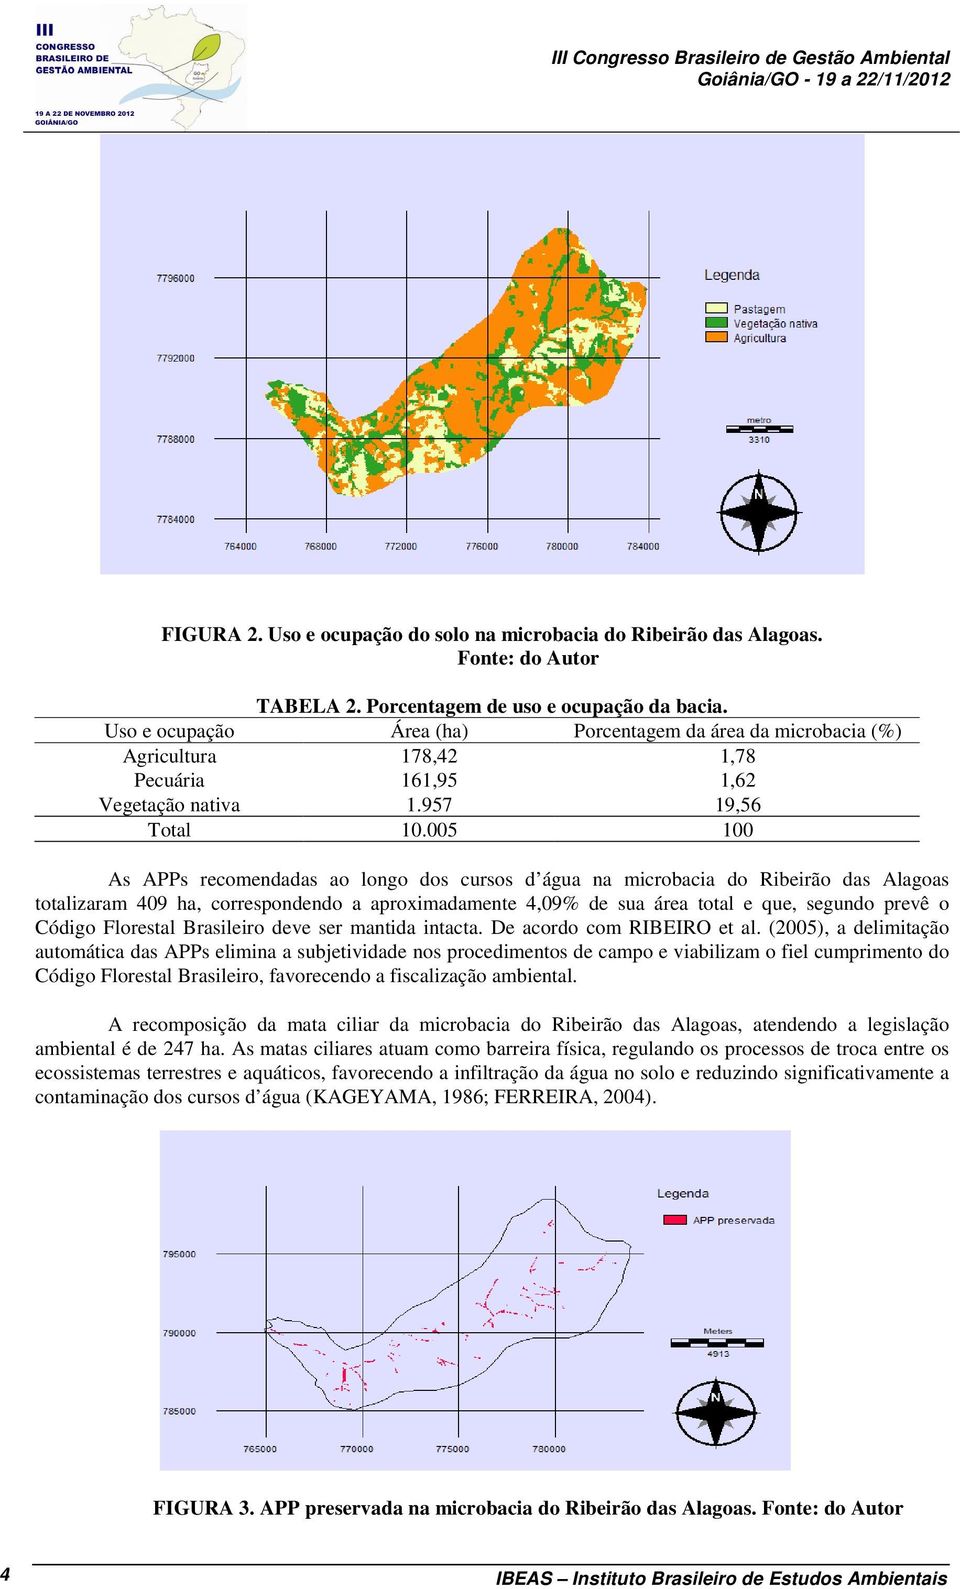 005 100 As APPs recomendadas ao longo dos cursos d água na microbacia do Ribeirão das Alagoas totalizaram 409 ha, correspondendo a aproximadamente 4,09% de sua área total e que, segundo prevê o